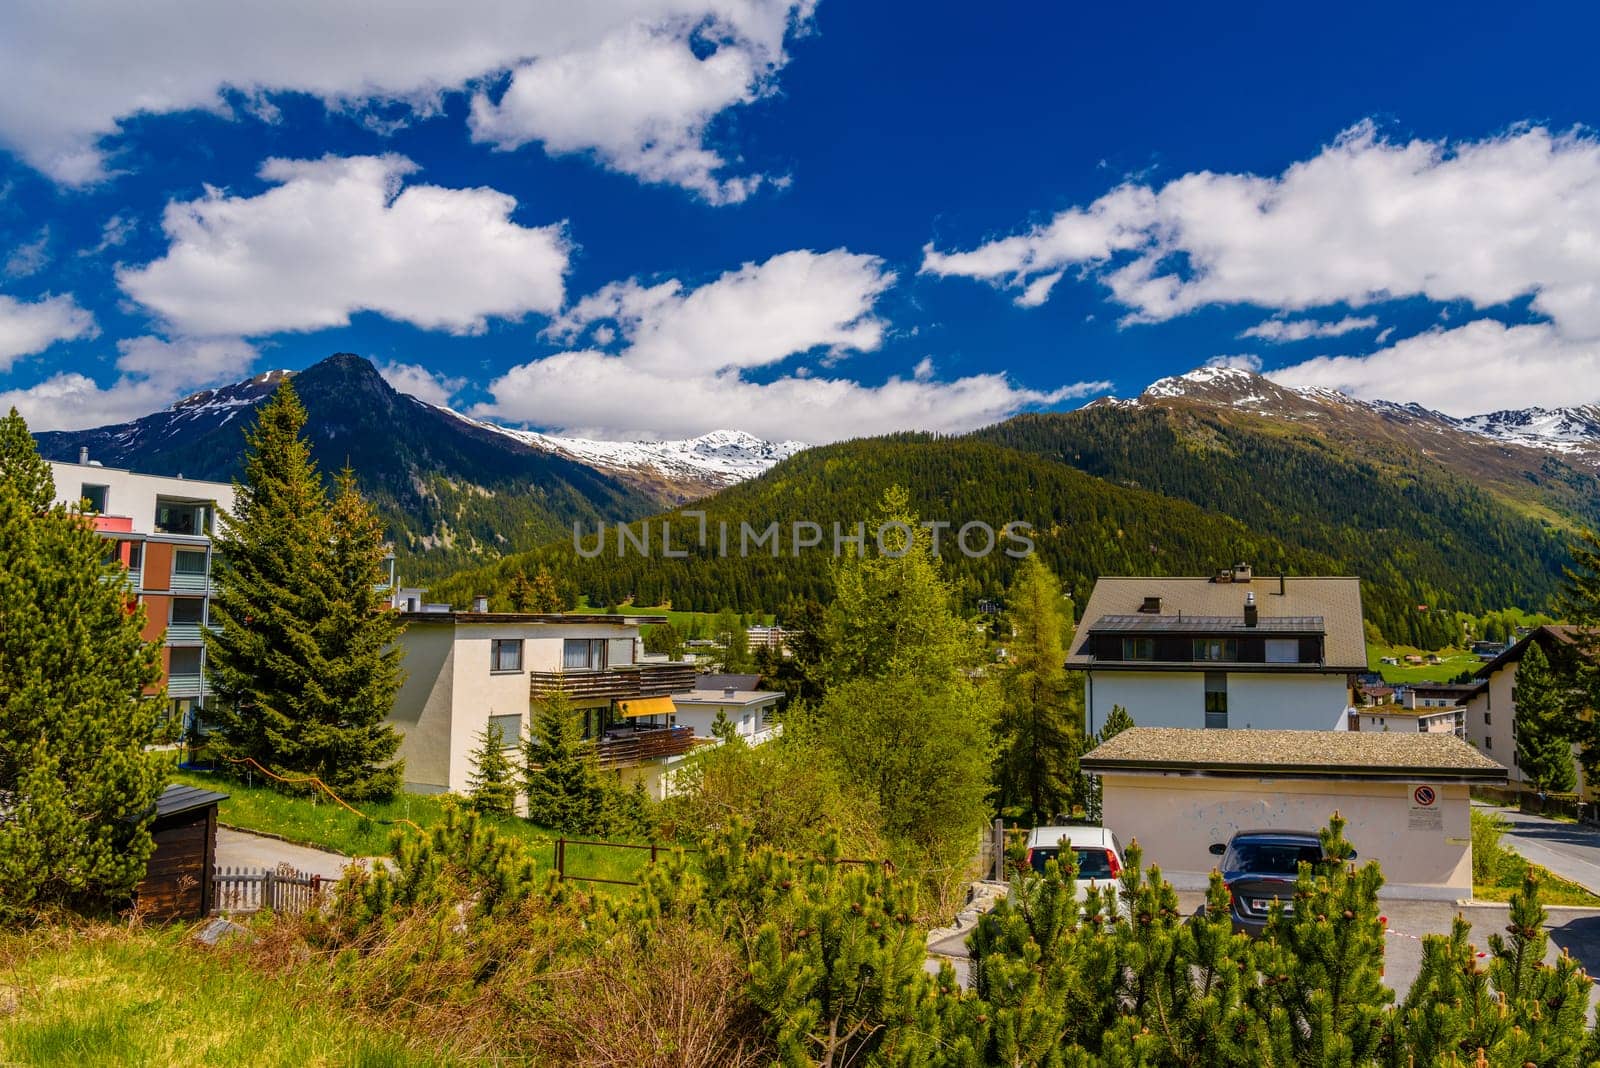 Houses in town village in Alps mountains, Davos, Graubuenden, Switzerland.